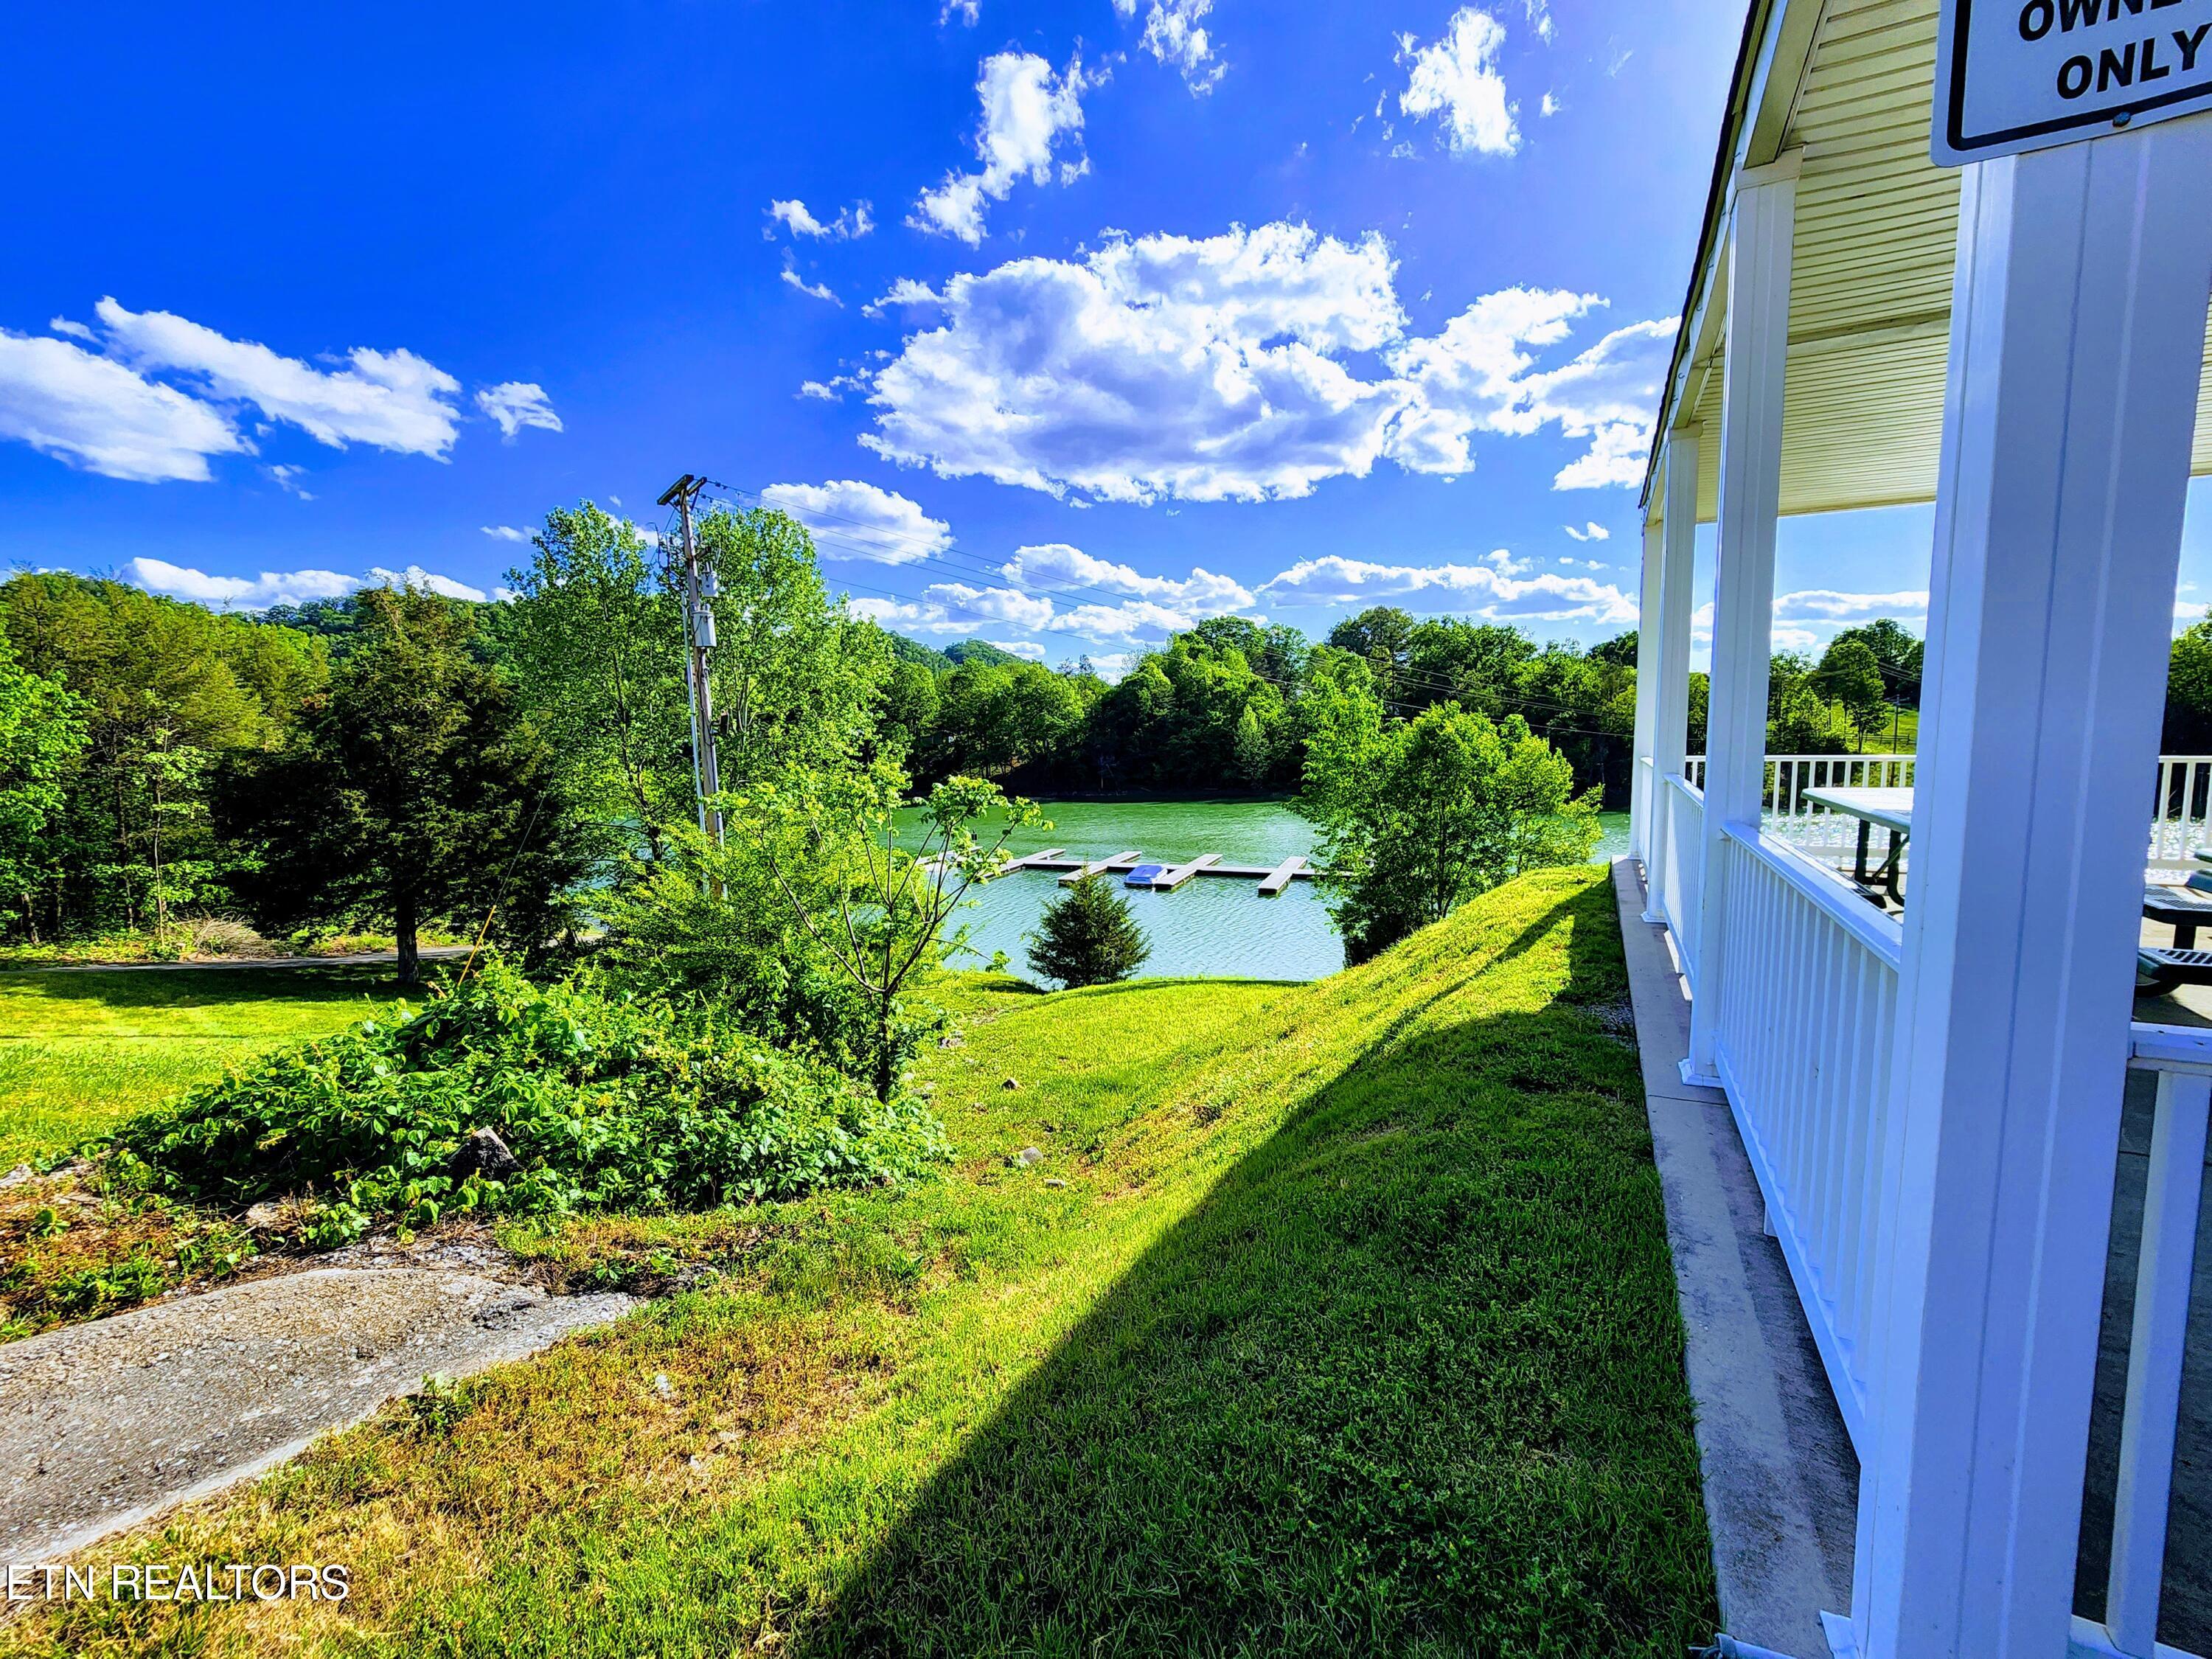 Norris Lake Real Estate - Image# 22